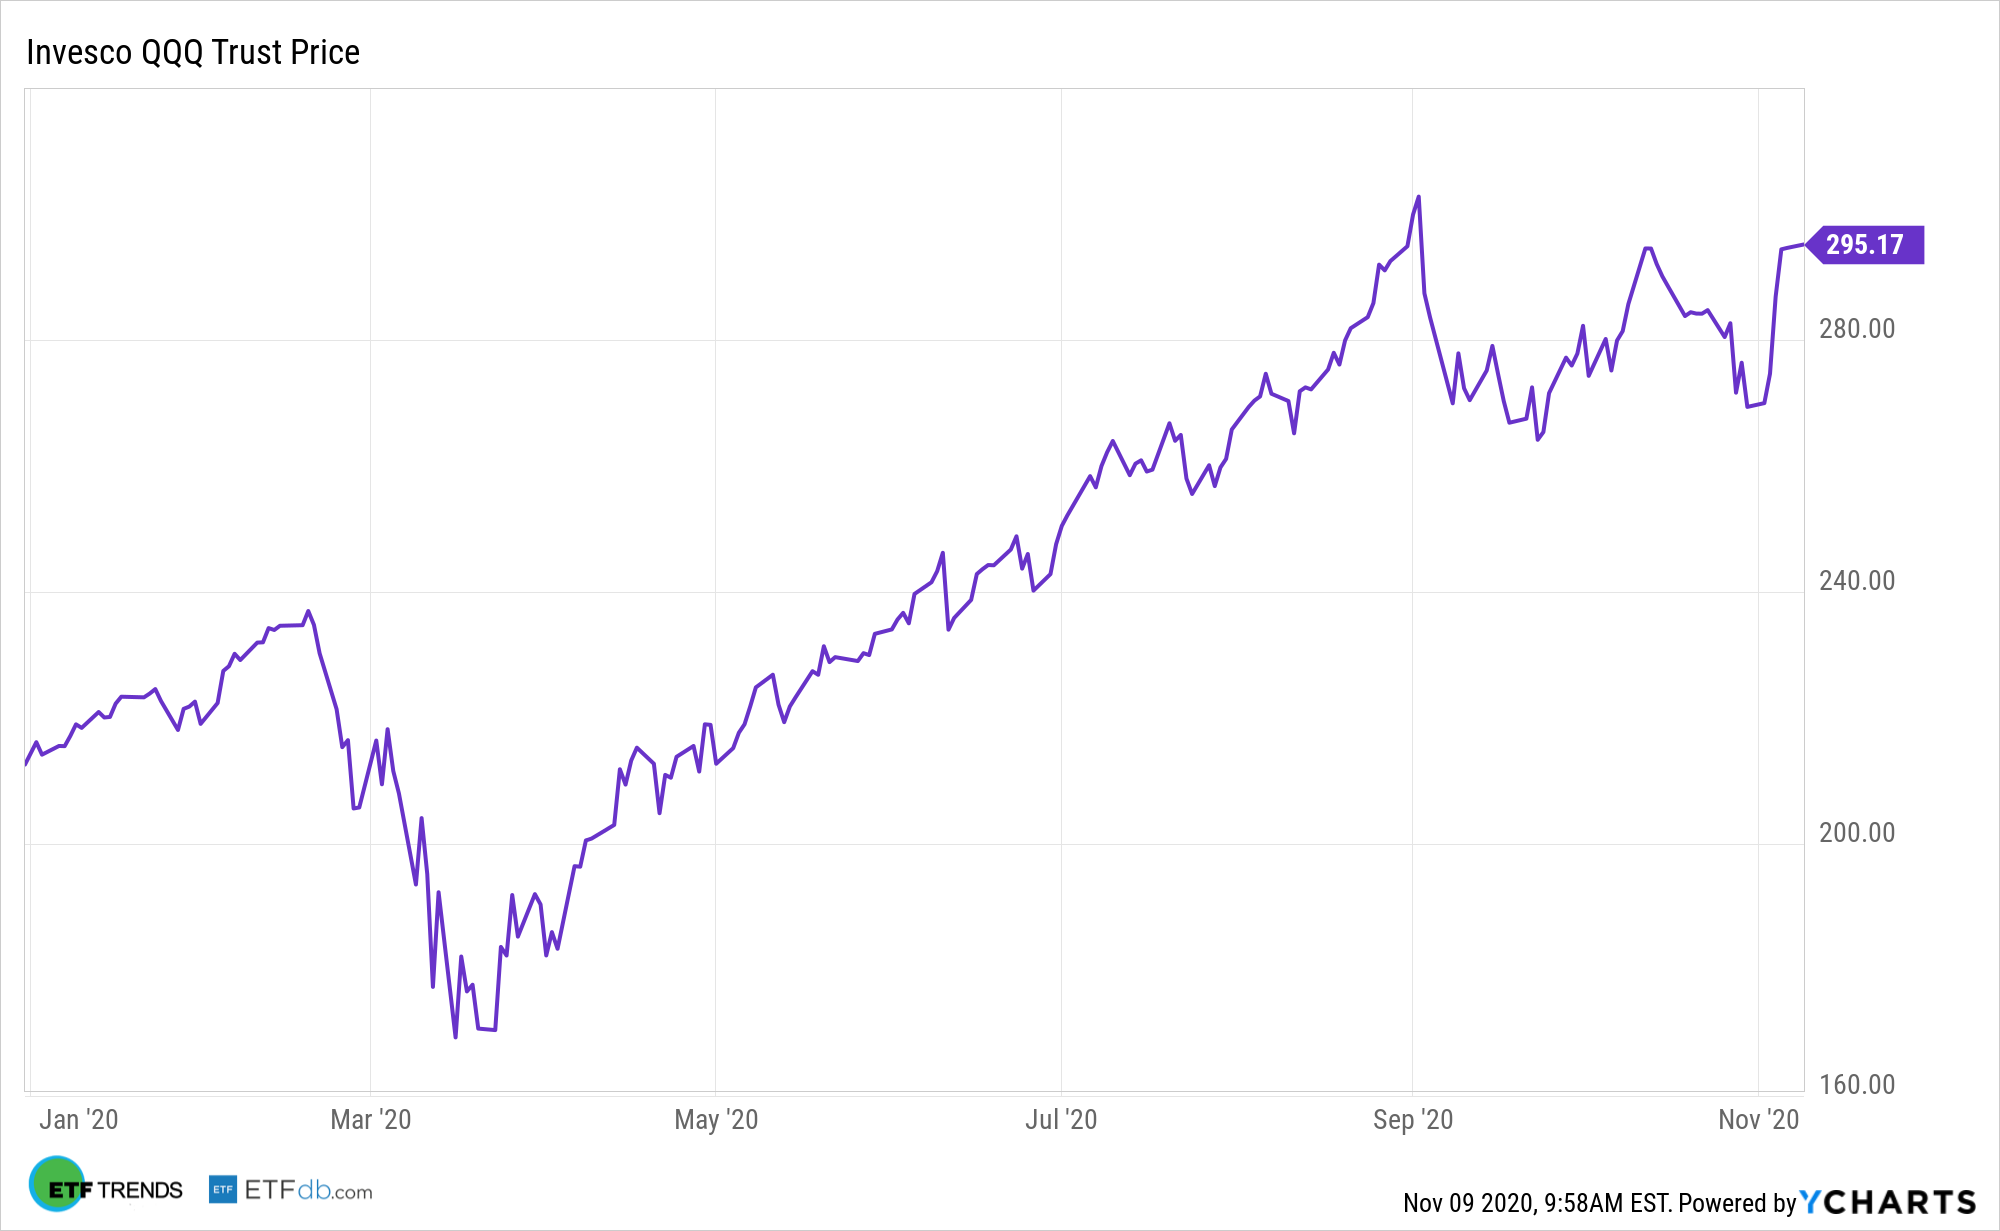 Invesco QQQ Trust (QQQ) Stock Price Is Down 29.9% YTD. Is It a Buy?